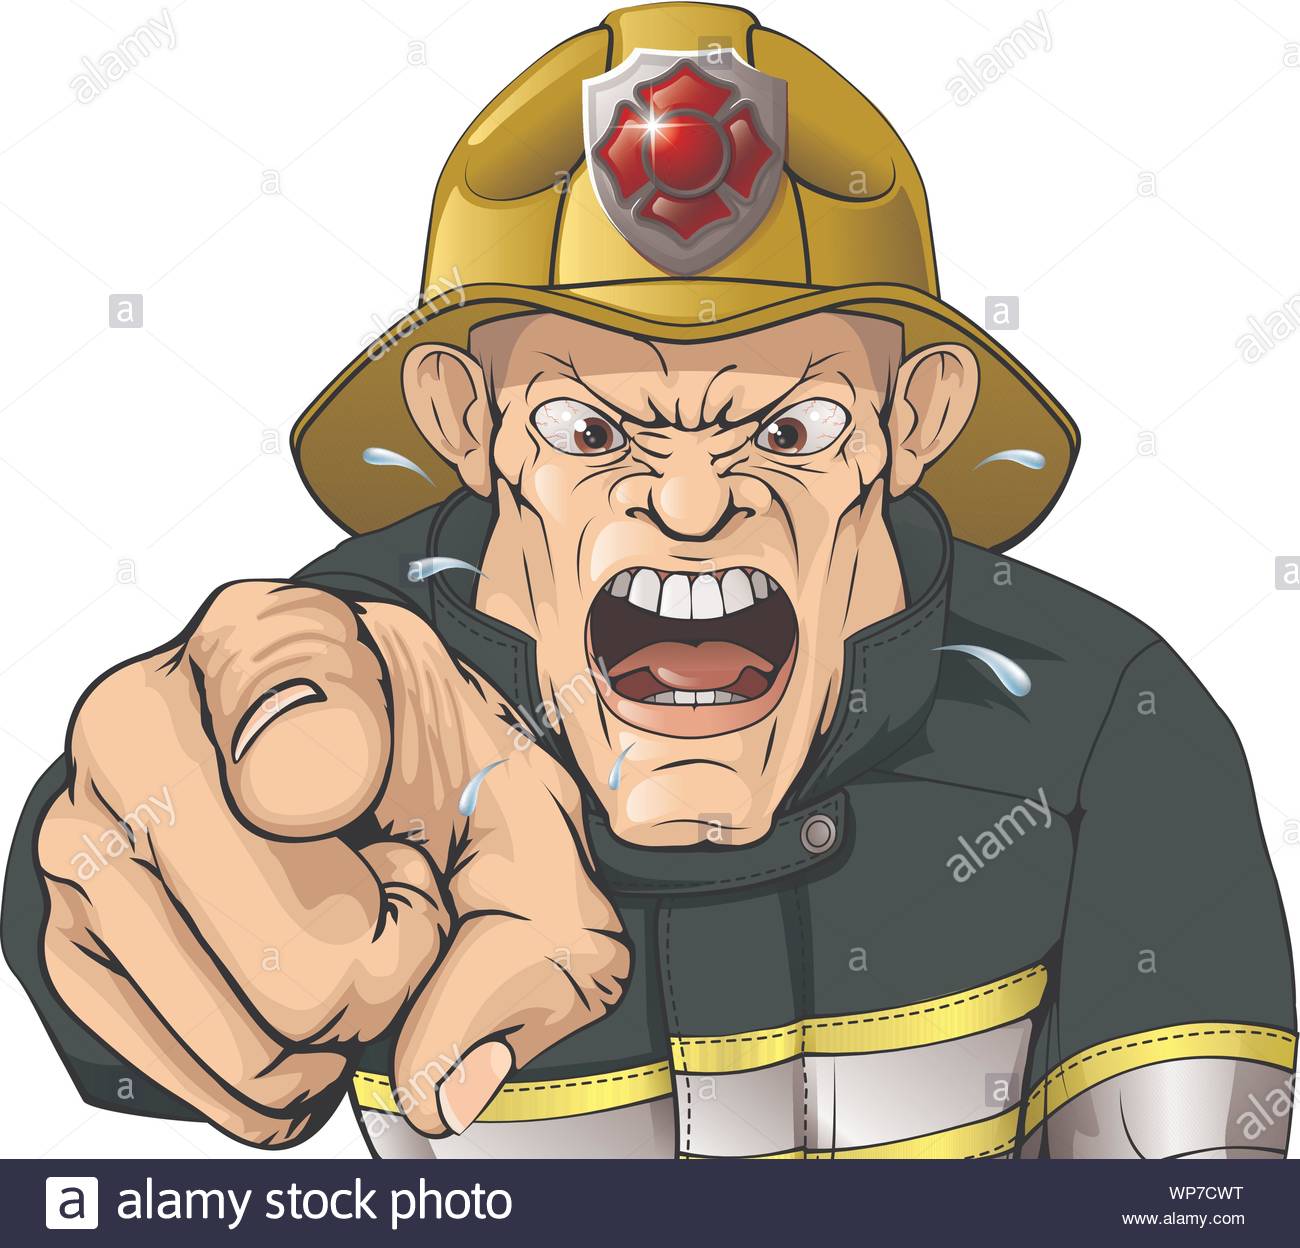 Pompier De Dessin Animé Photos Pompier De Dessin Animé